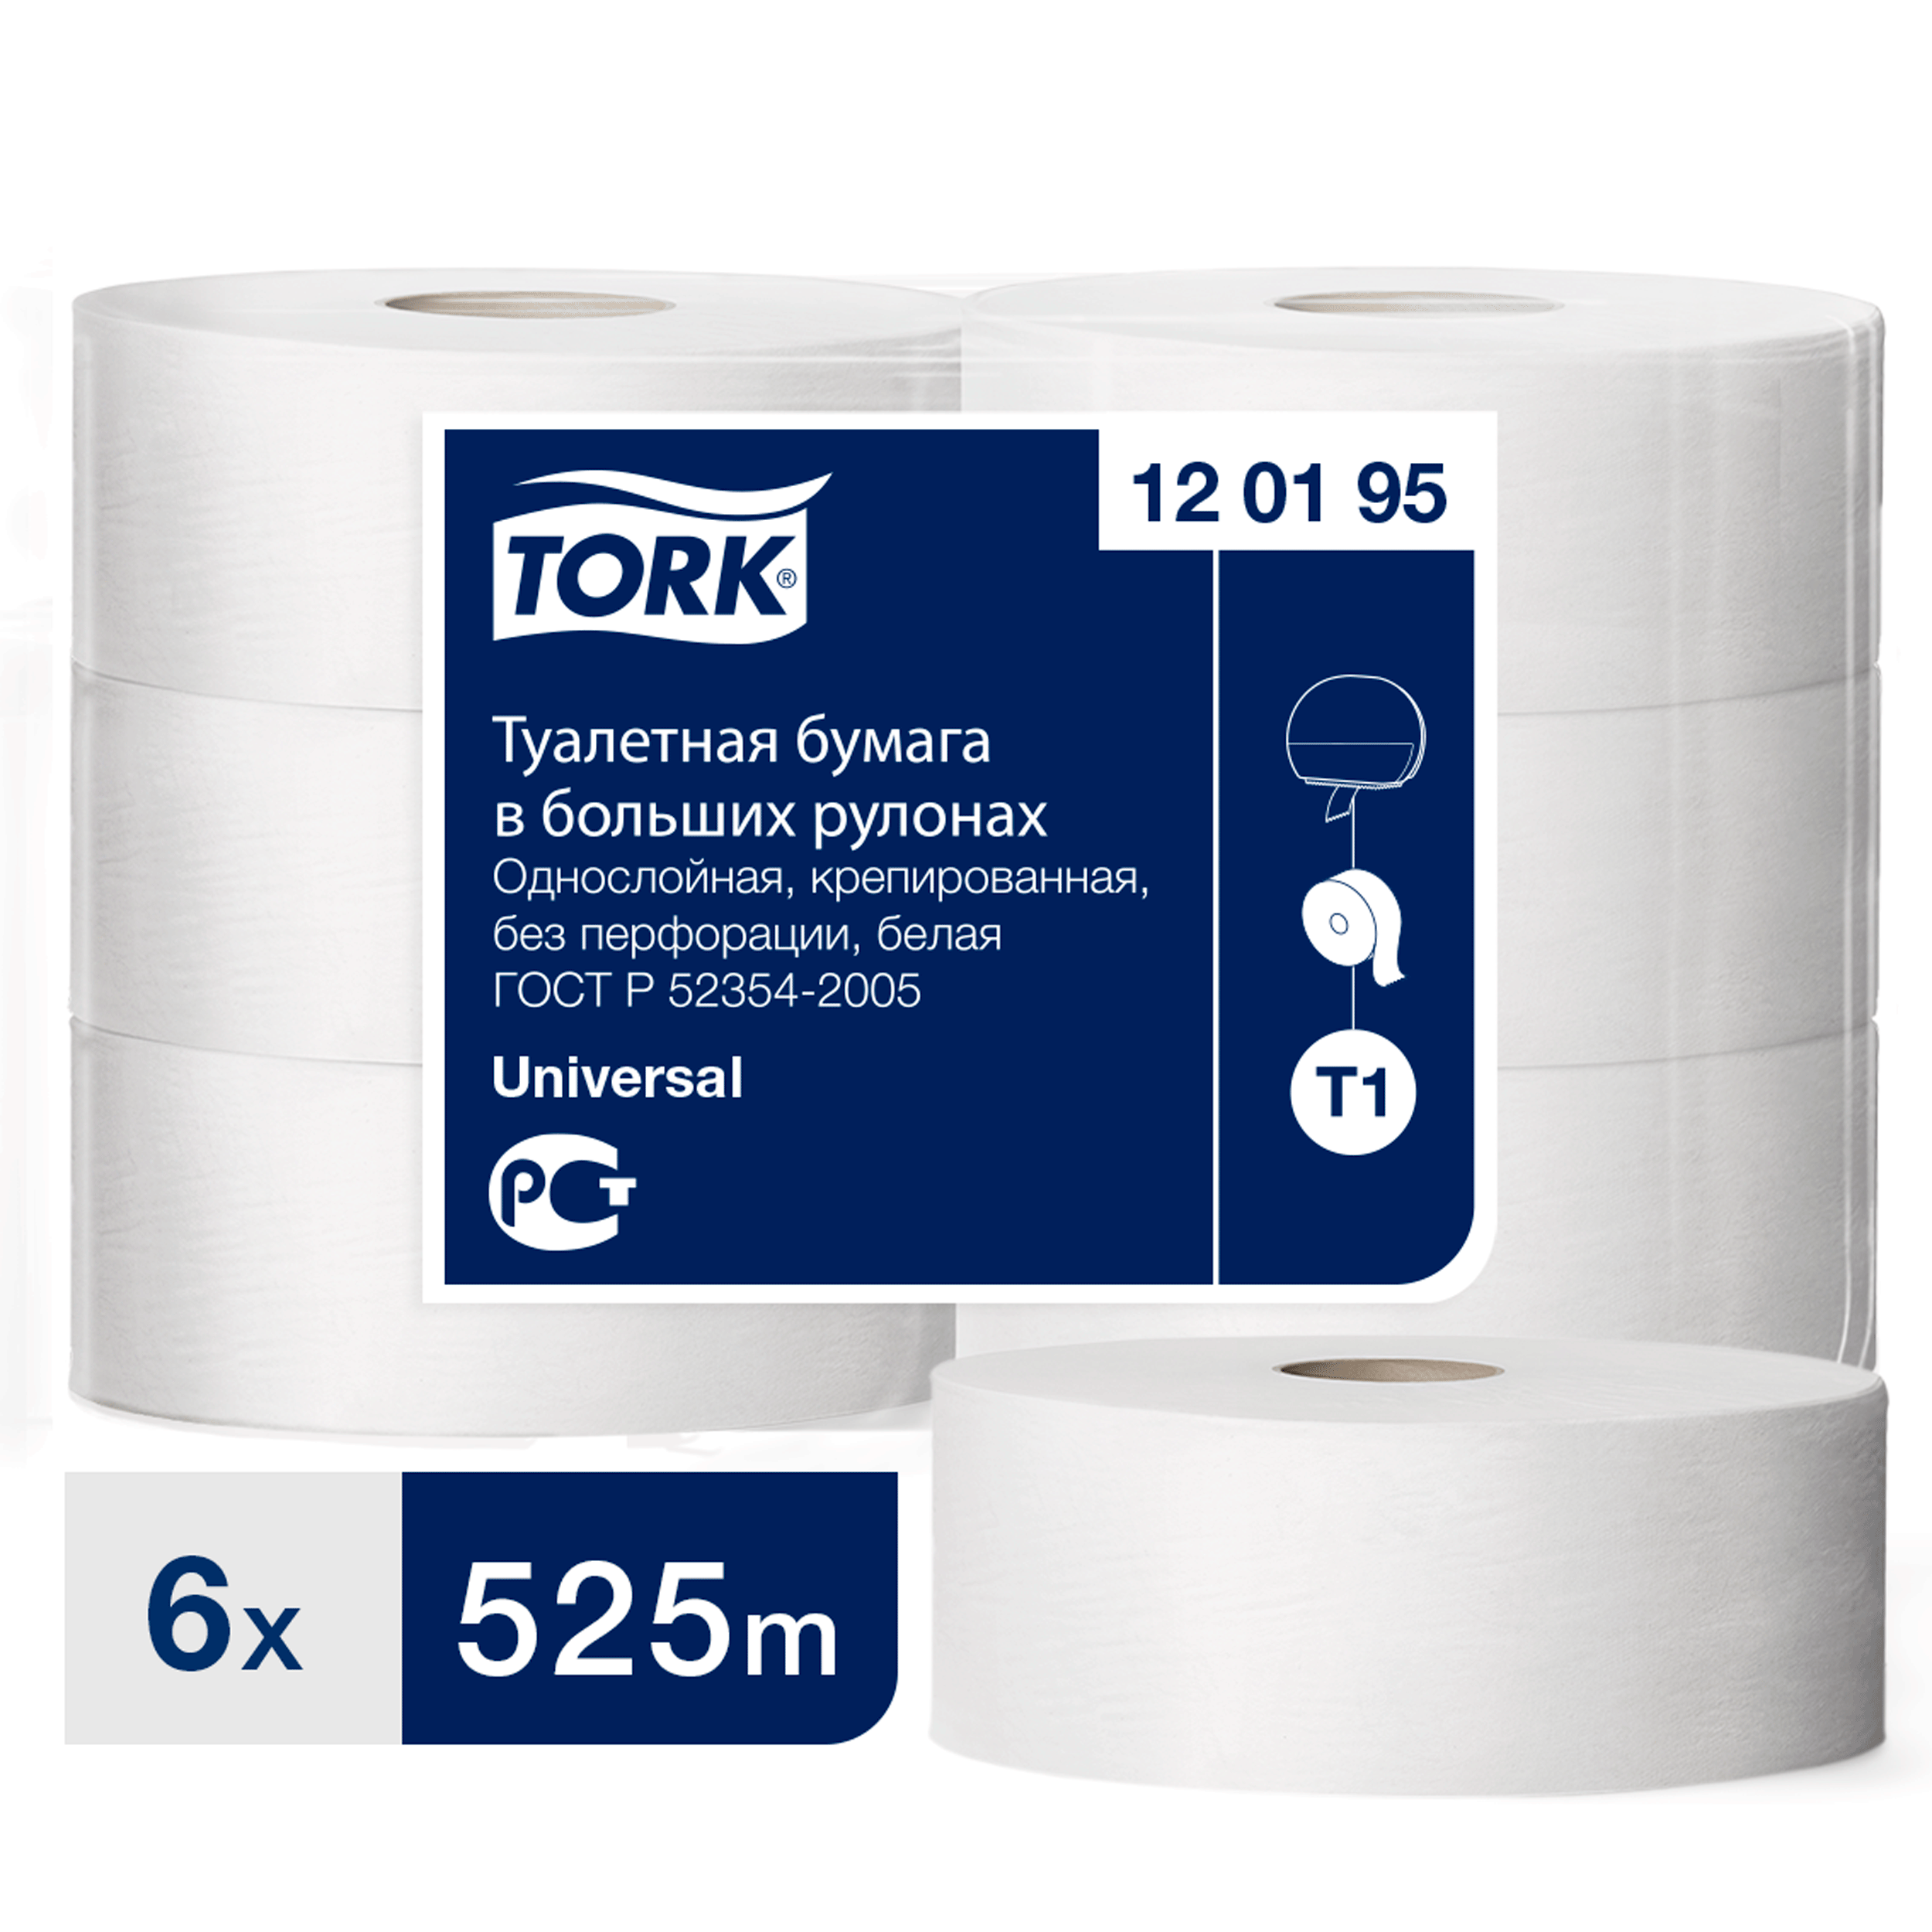 Туалетная бумага Tork в больших рулонах, T1, 1 слой, 525 м, ширина 9,5см, 6 шт